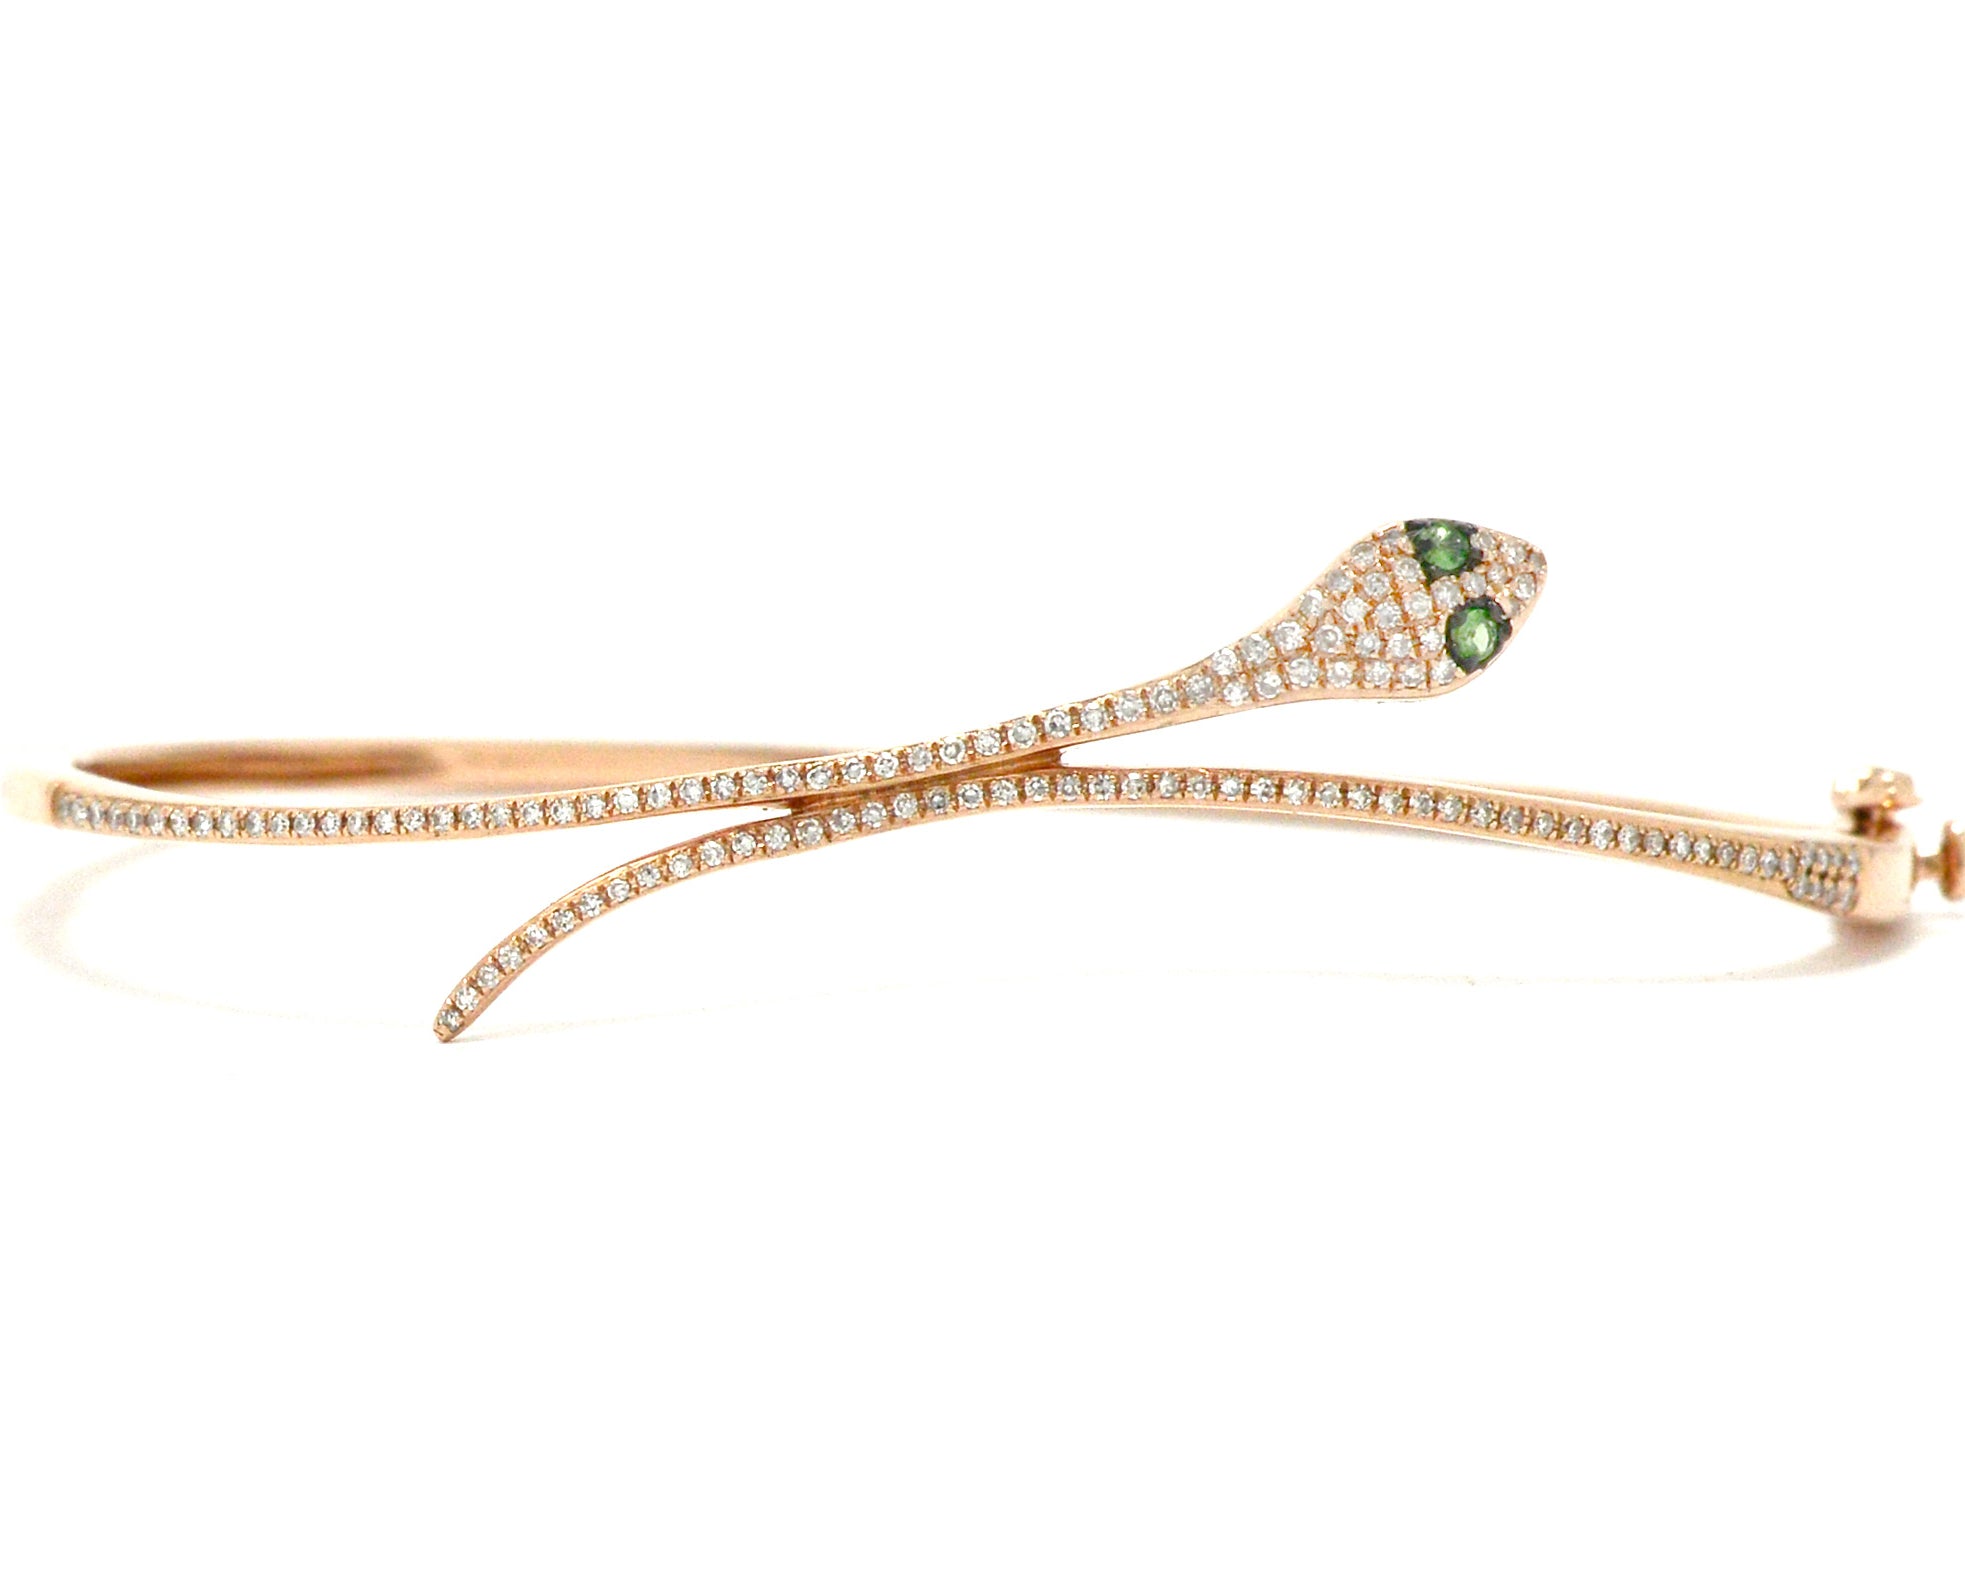 A new, modern rose gold and diamonds snake bracelet.